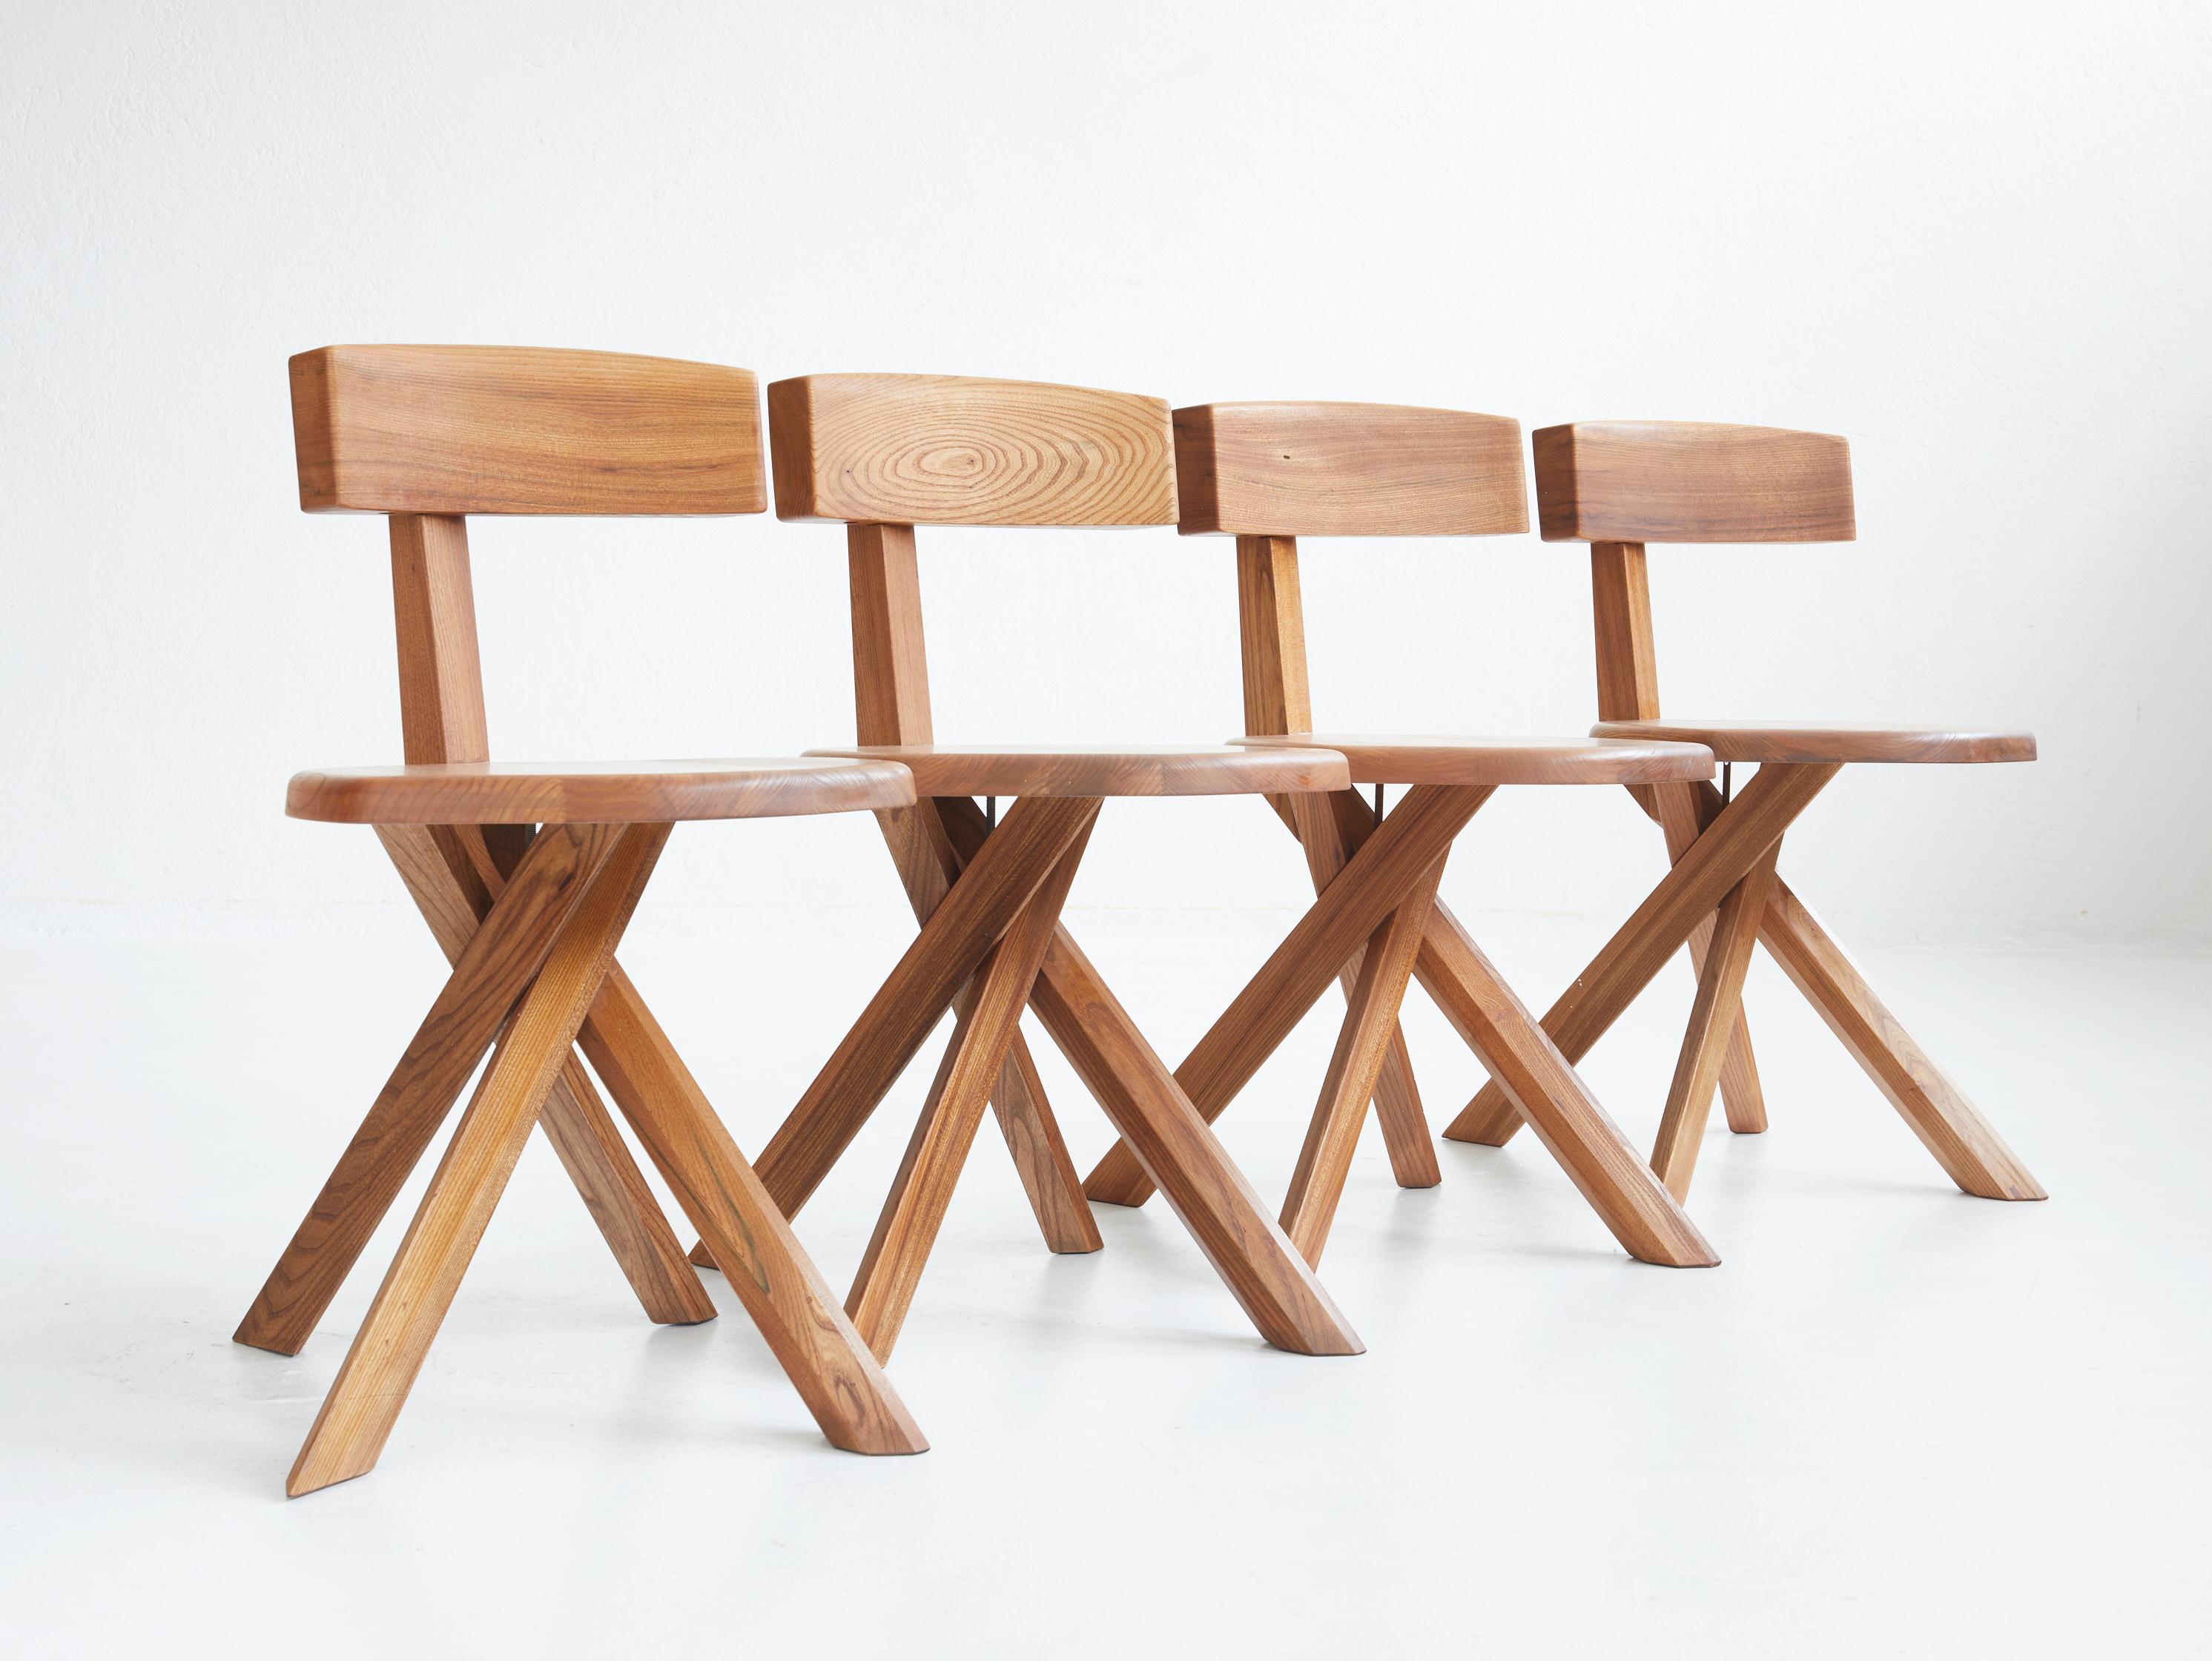 Magnifique ensemble de 4 chaises de salle à manger S34 en bois d'orme massif par Pierre Chapo.

La S34 est aujourd'hui la chaise la plus rare et la plus recherchée de Pierre Chapo et certainement l'une des chaises les plus sculpturales qui